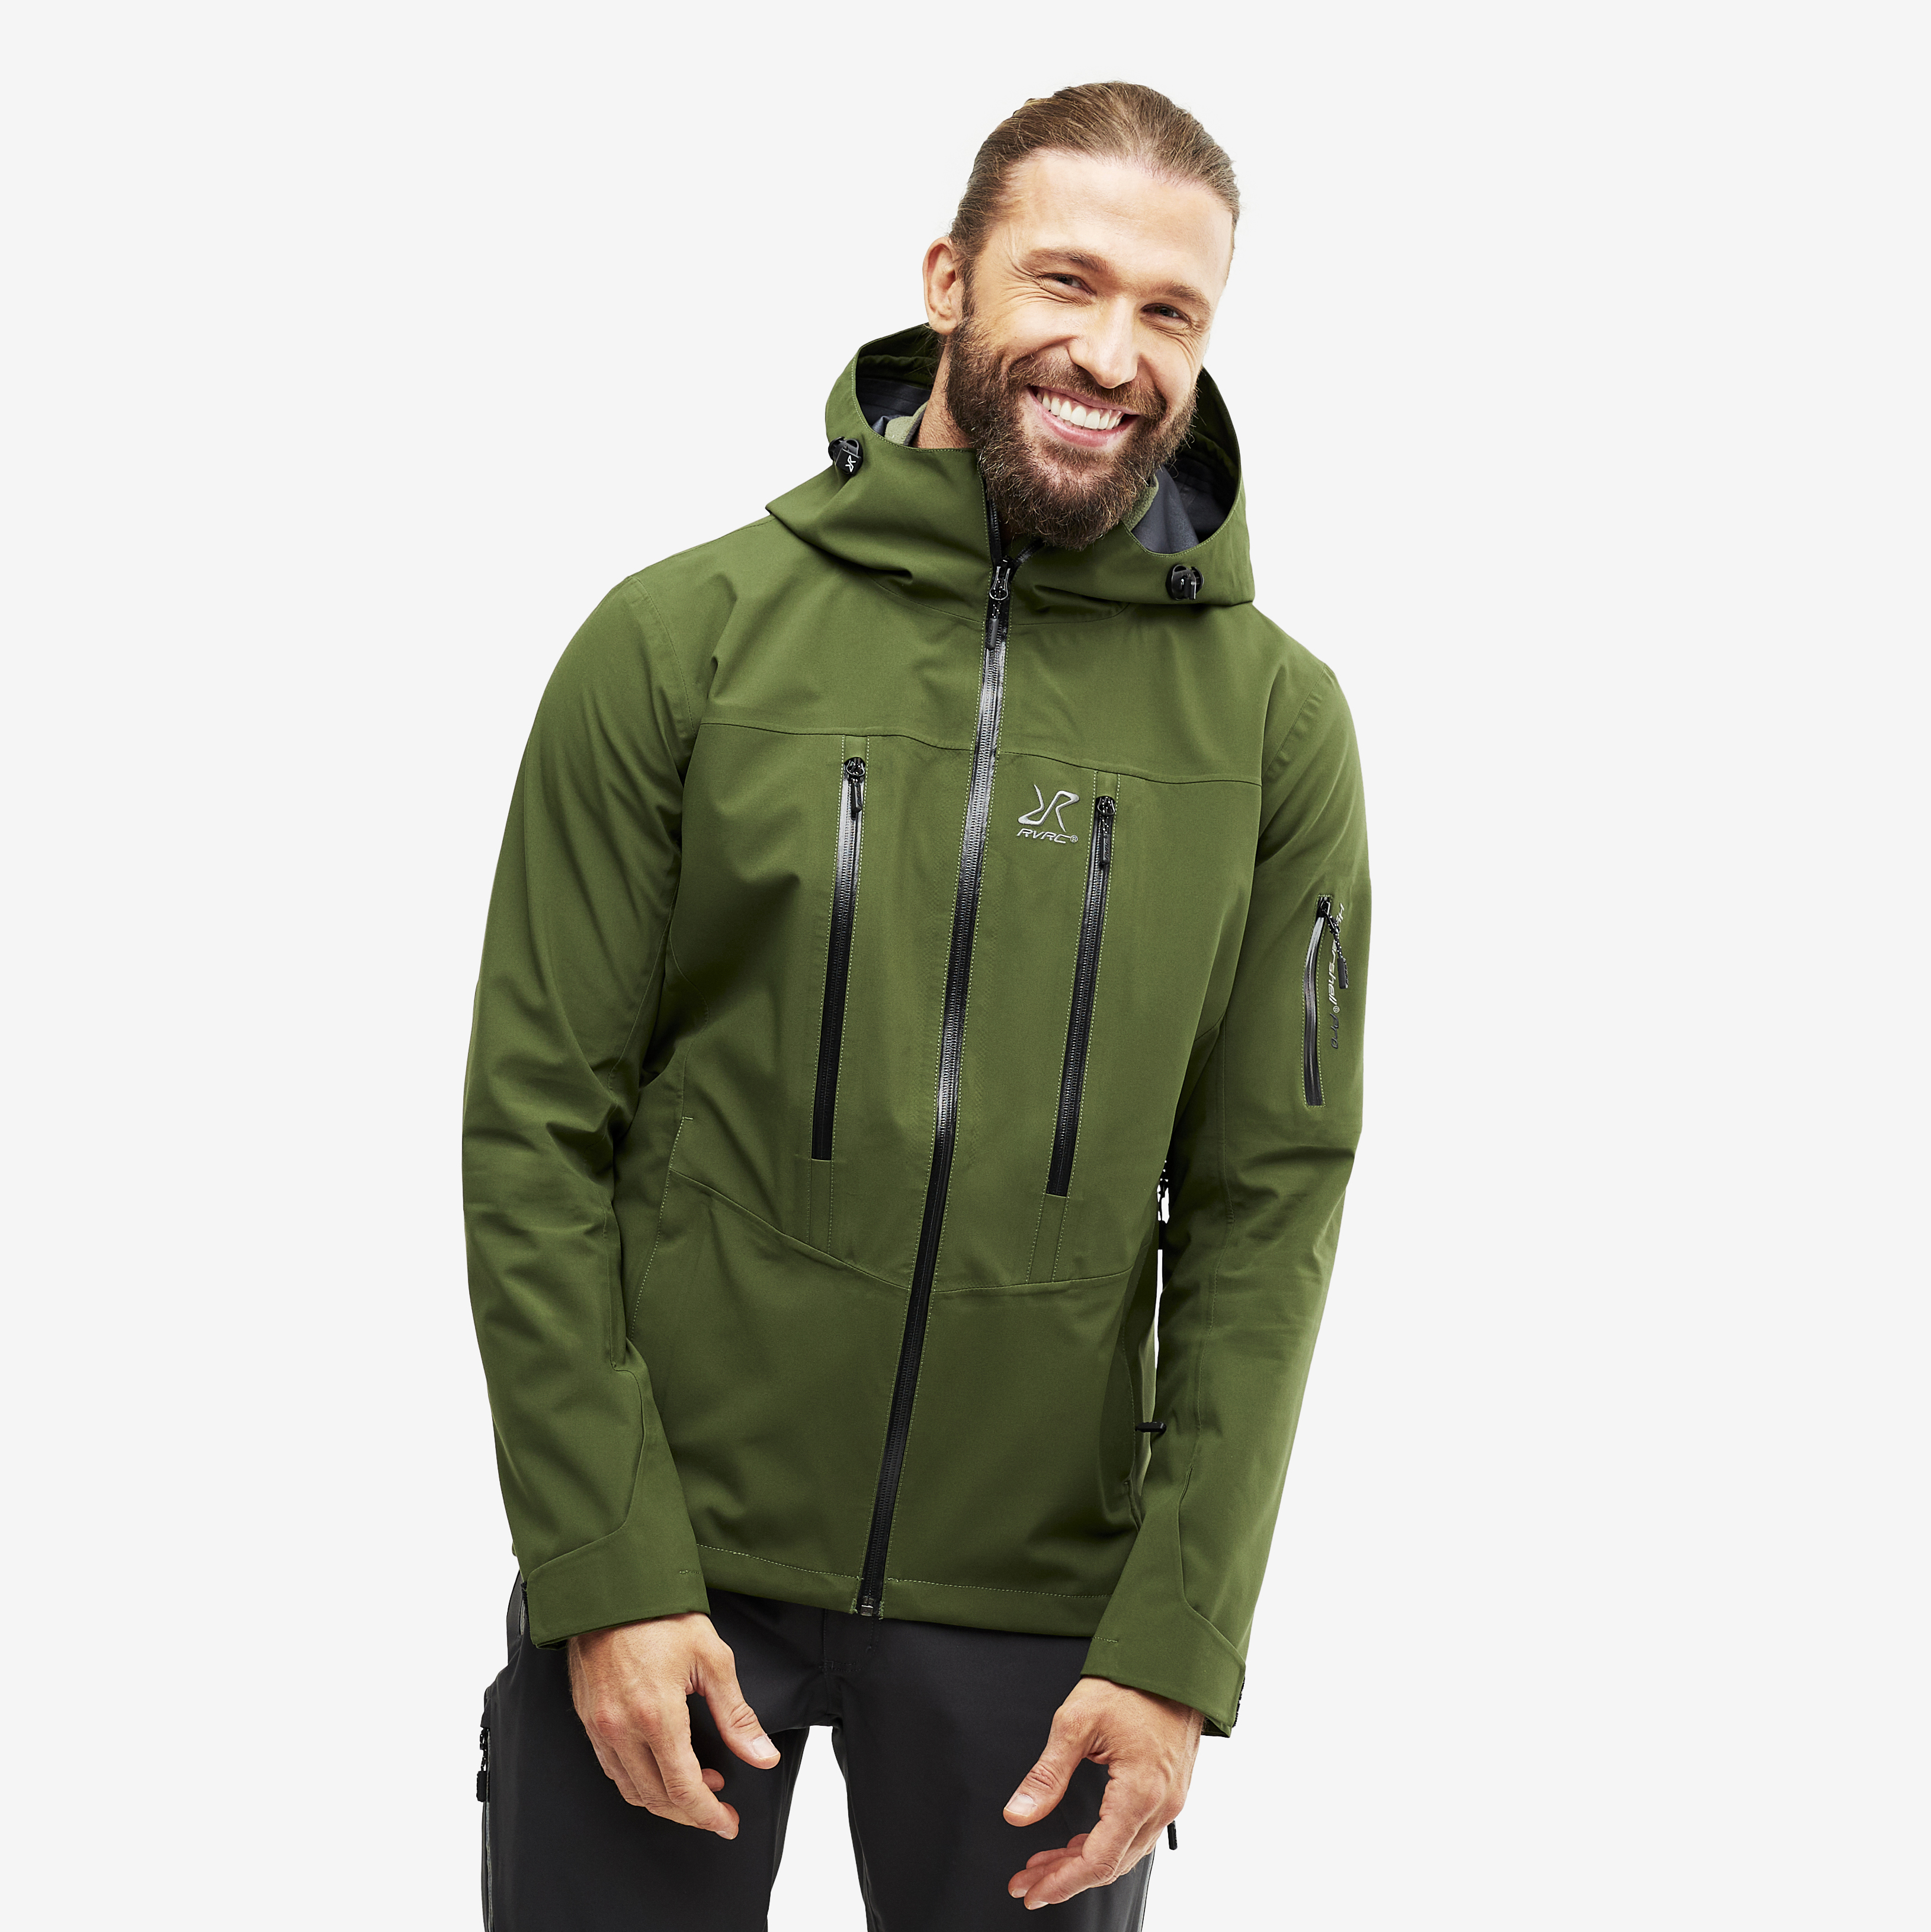 Whisper waterproof jacket for men in green